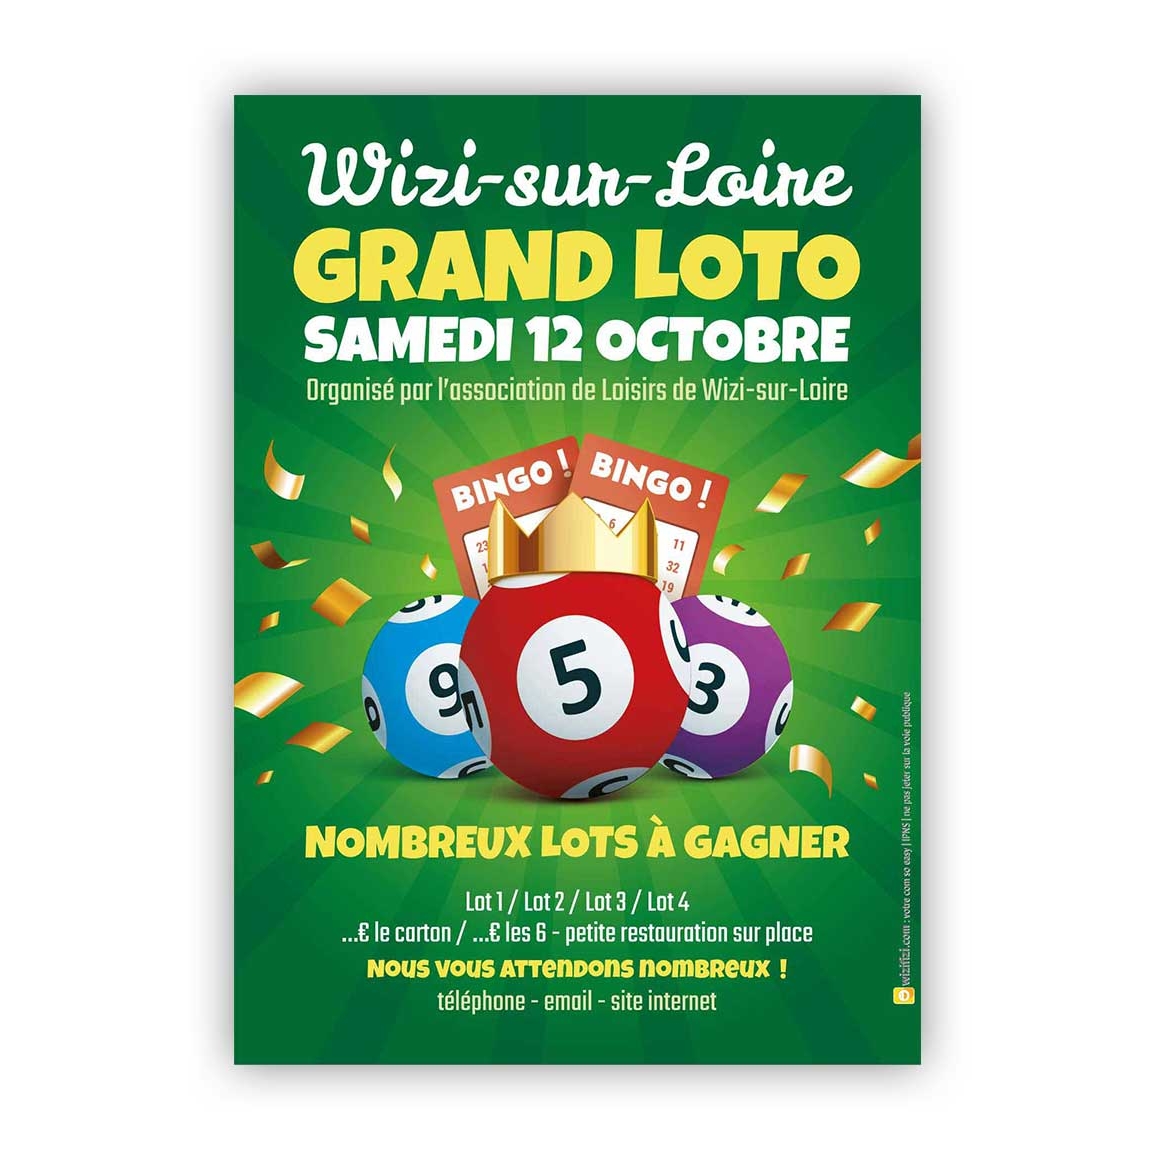 Jeux : Super loto bingo Création impression affiches flyers panneaux